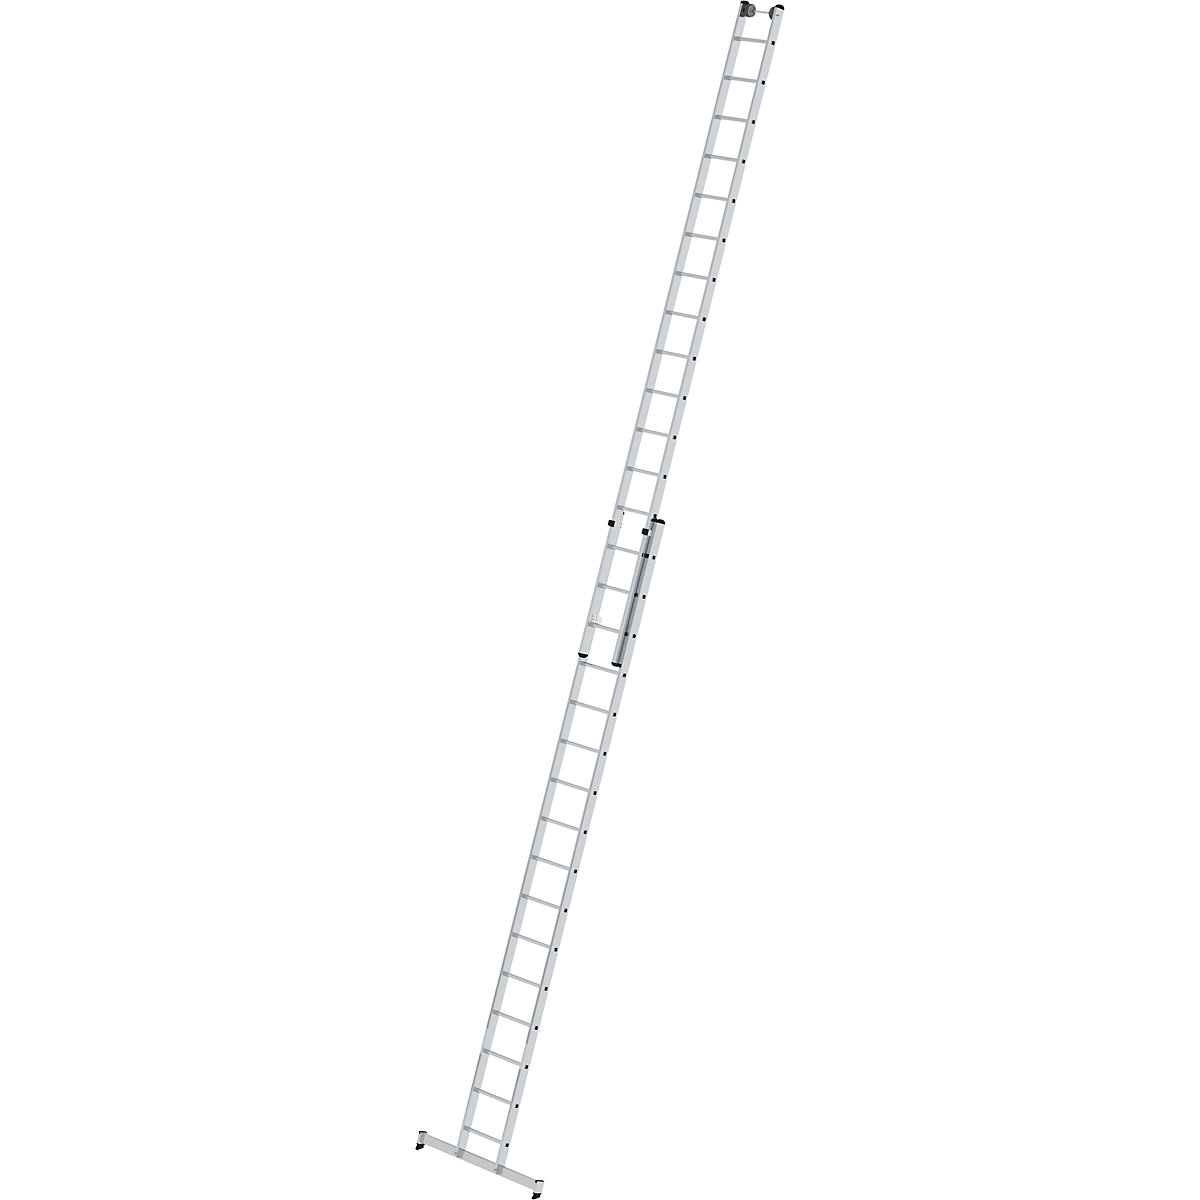 Višinsko nastavljiva prislonska lestev – MUNK, pomična lestev, 2-delna, 2 x 16 klinov, s prečko nivello®-6